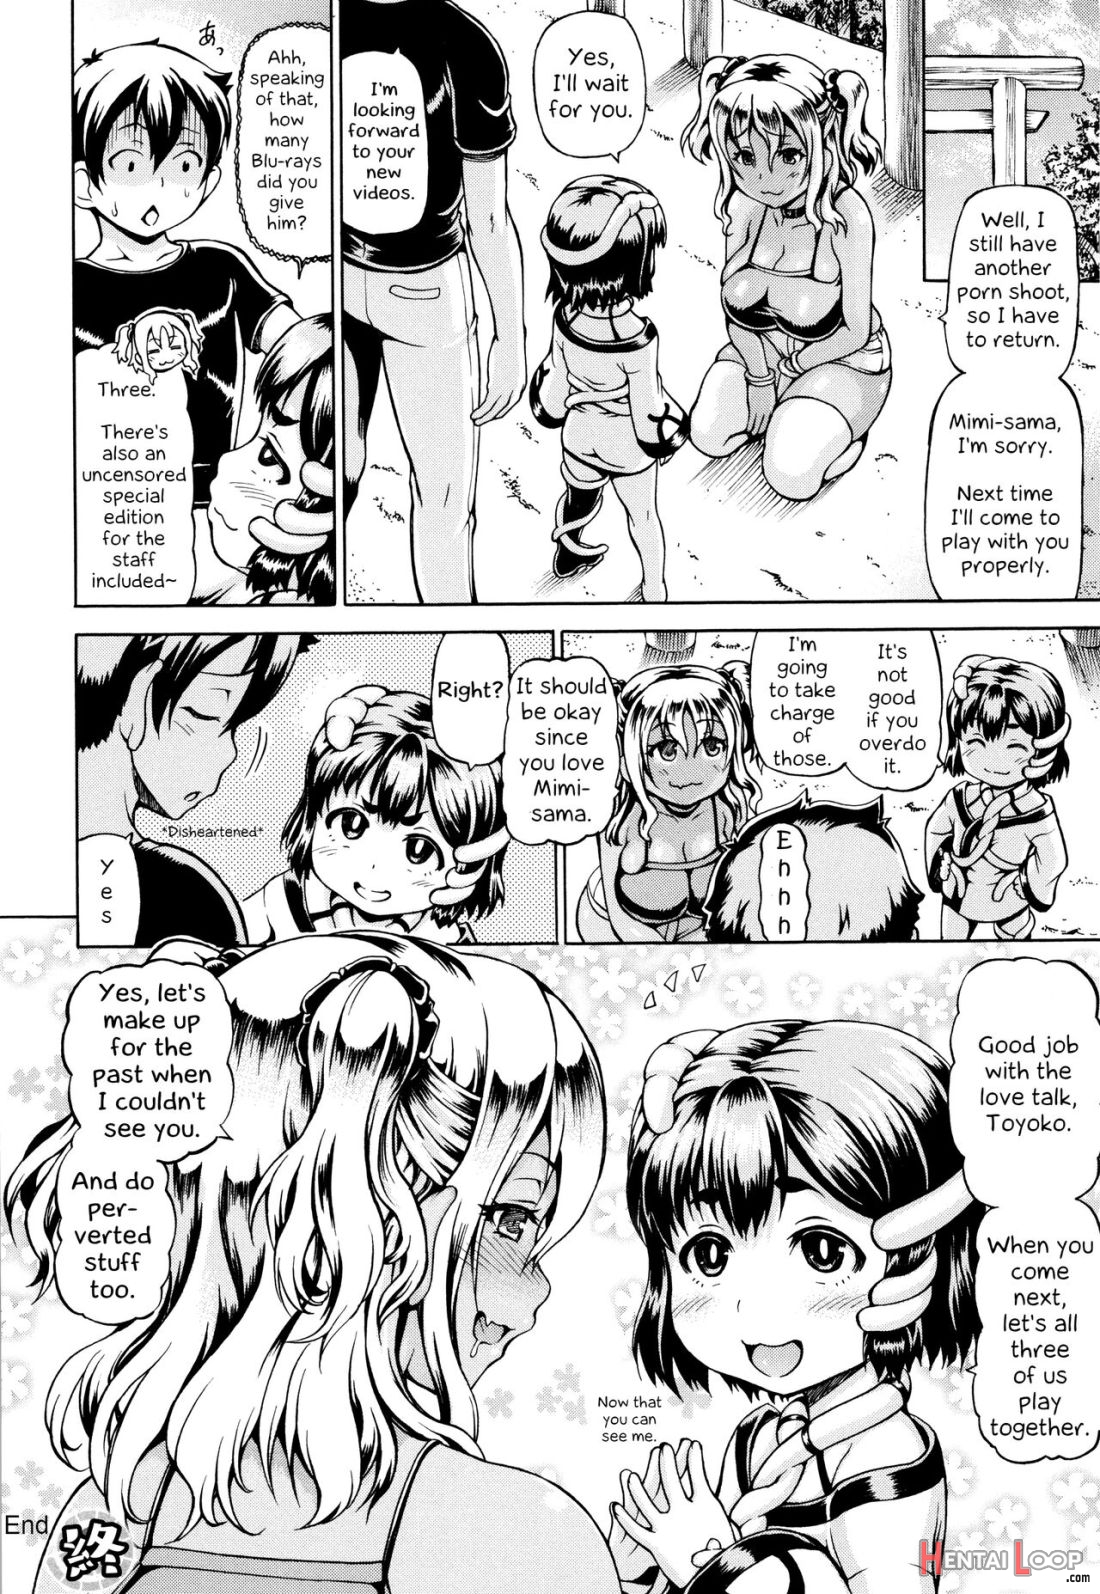 Mimi-sama Okkiku Shite! page 69